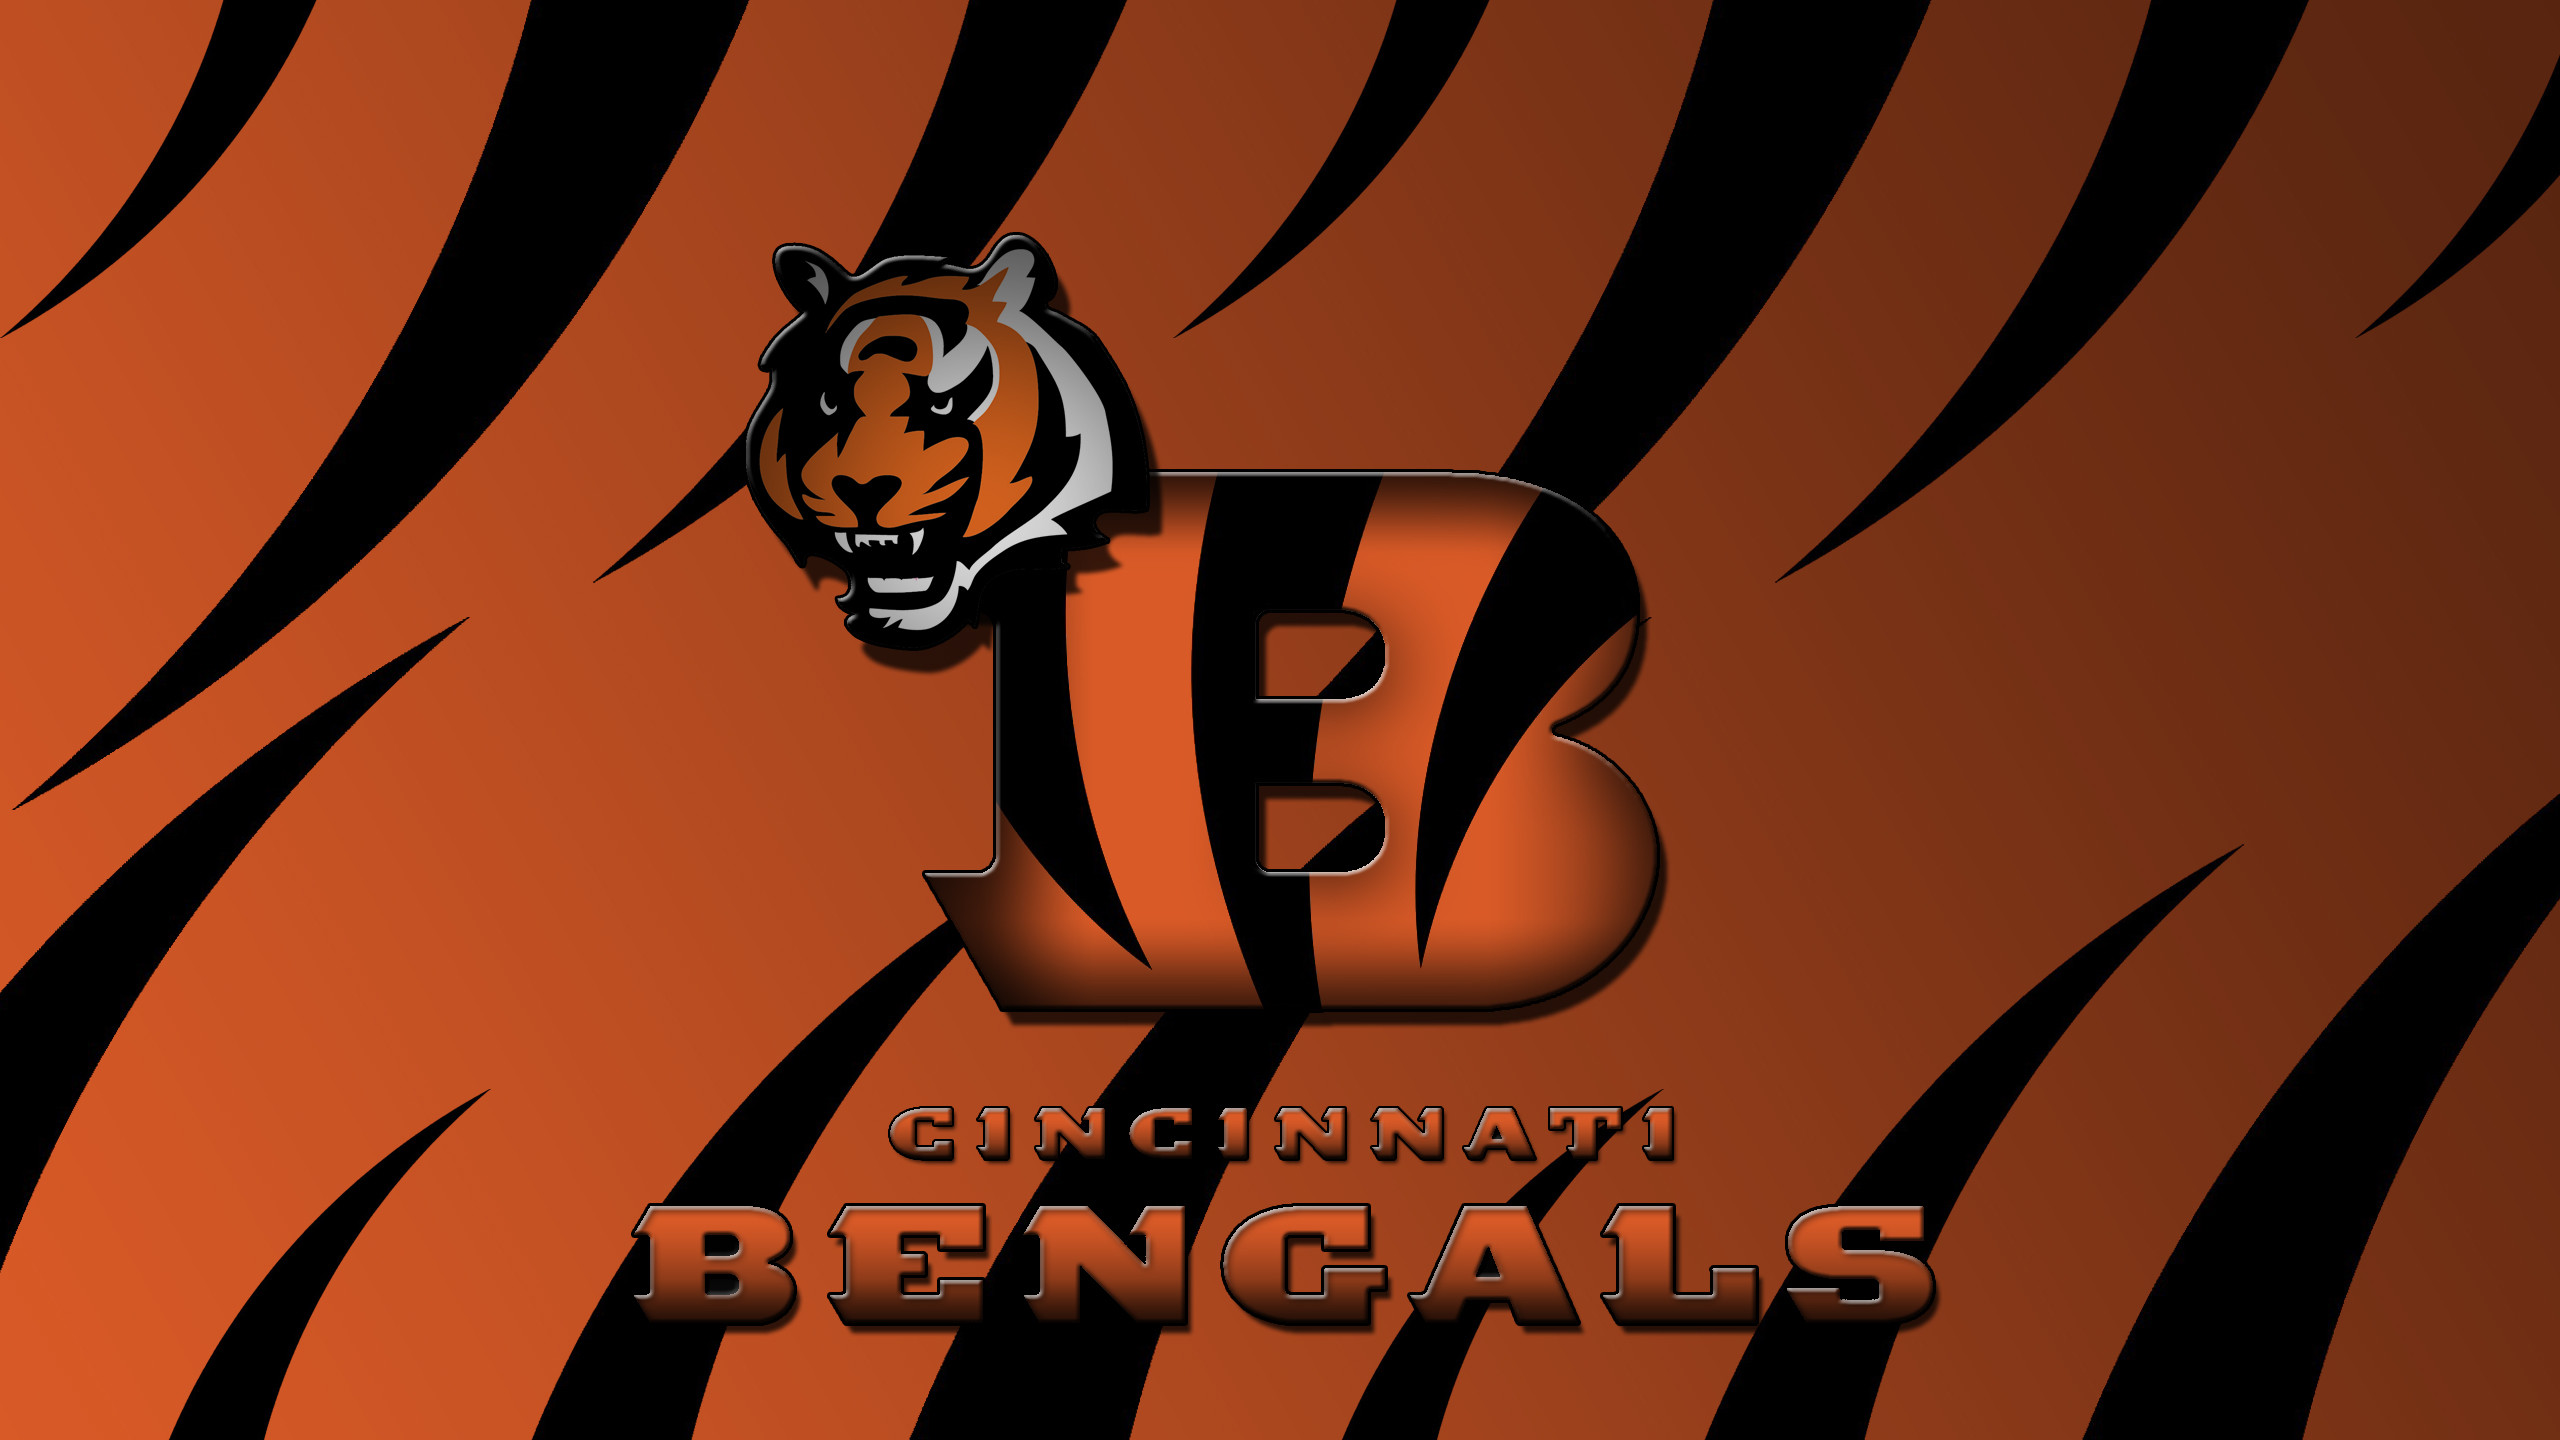 2560x1440 Cincinnati Bengals Desktop Backgrounds.